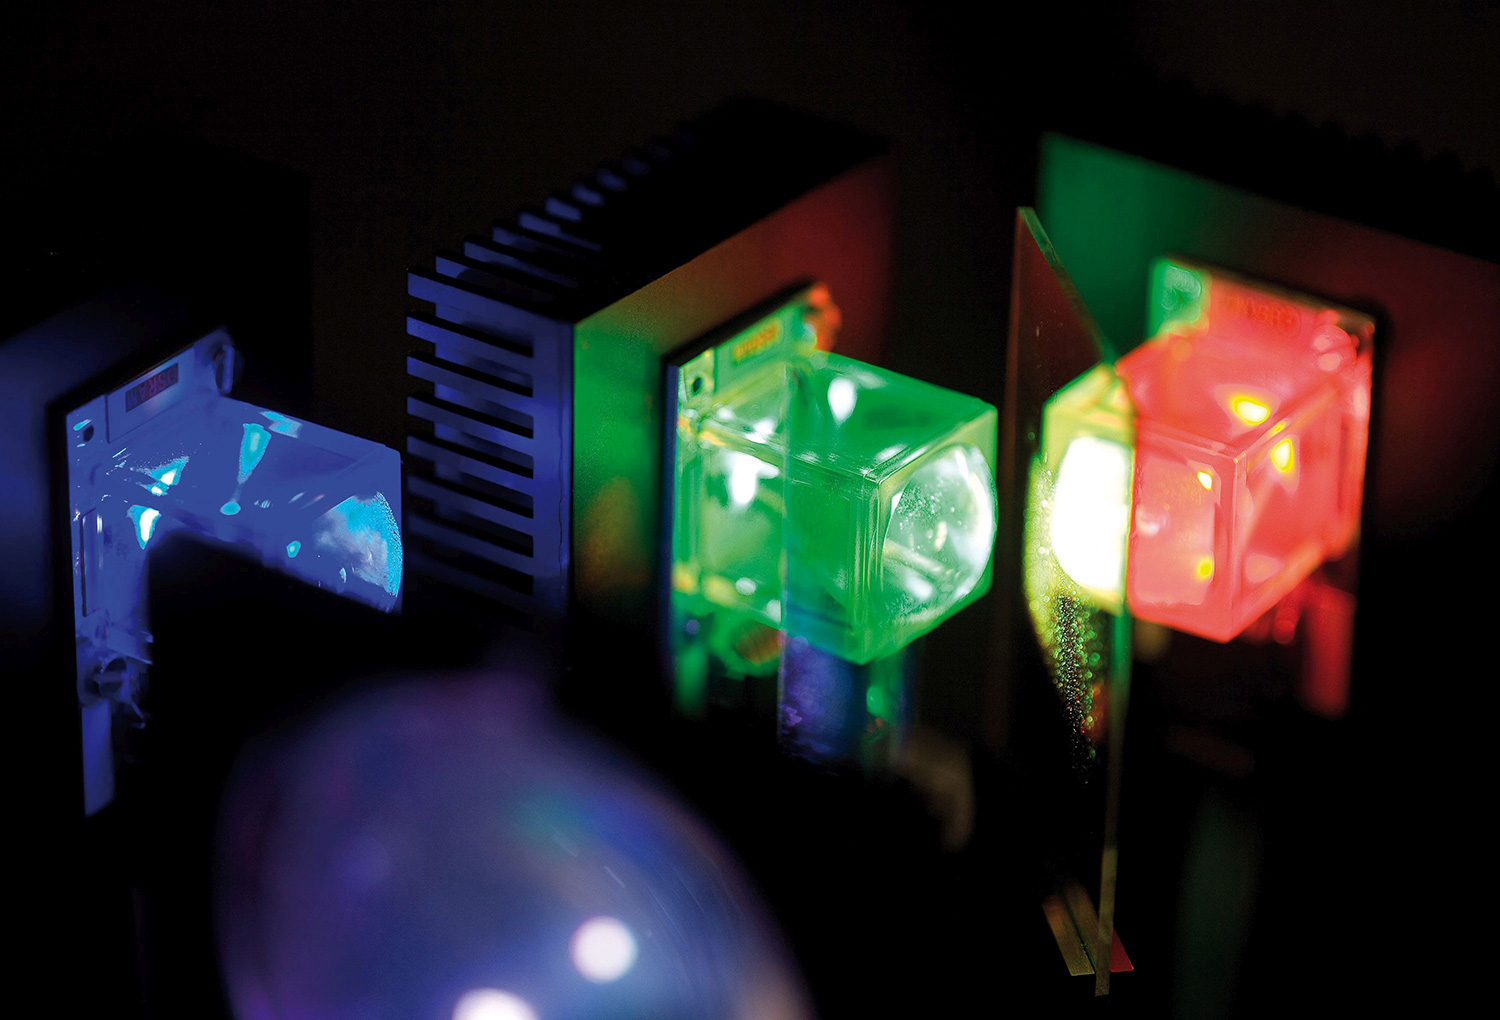 Hocheffiziente Dünnschicht LED-Module. Damit lassen sich sowohl runde als auch rechteckige Bereiche homogen ausleuchten.